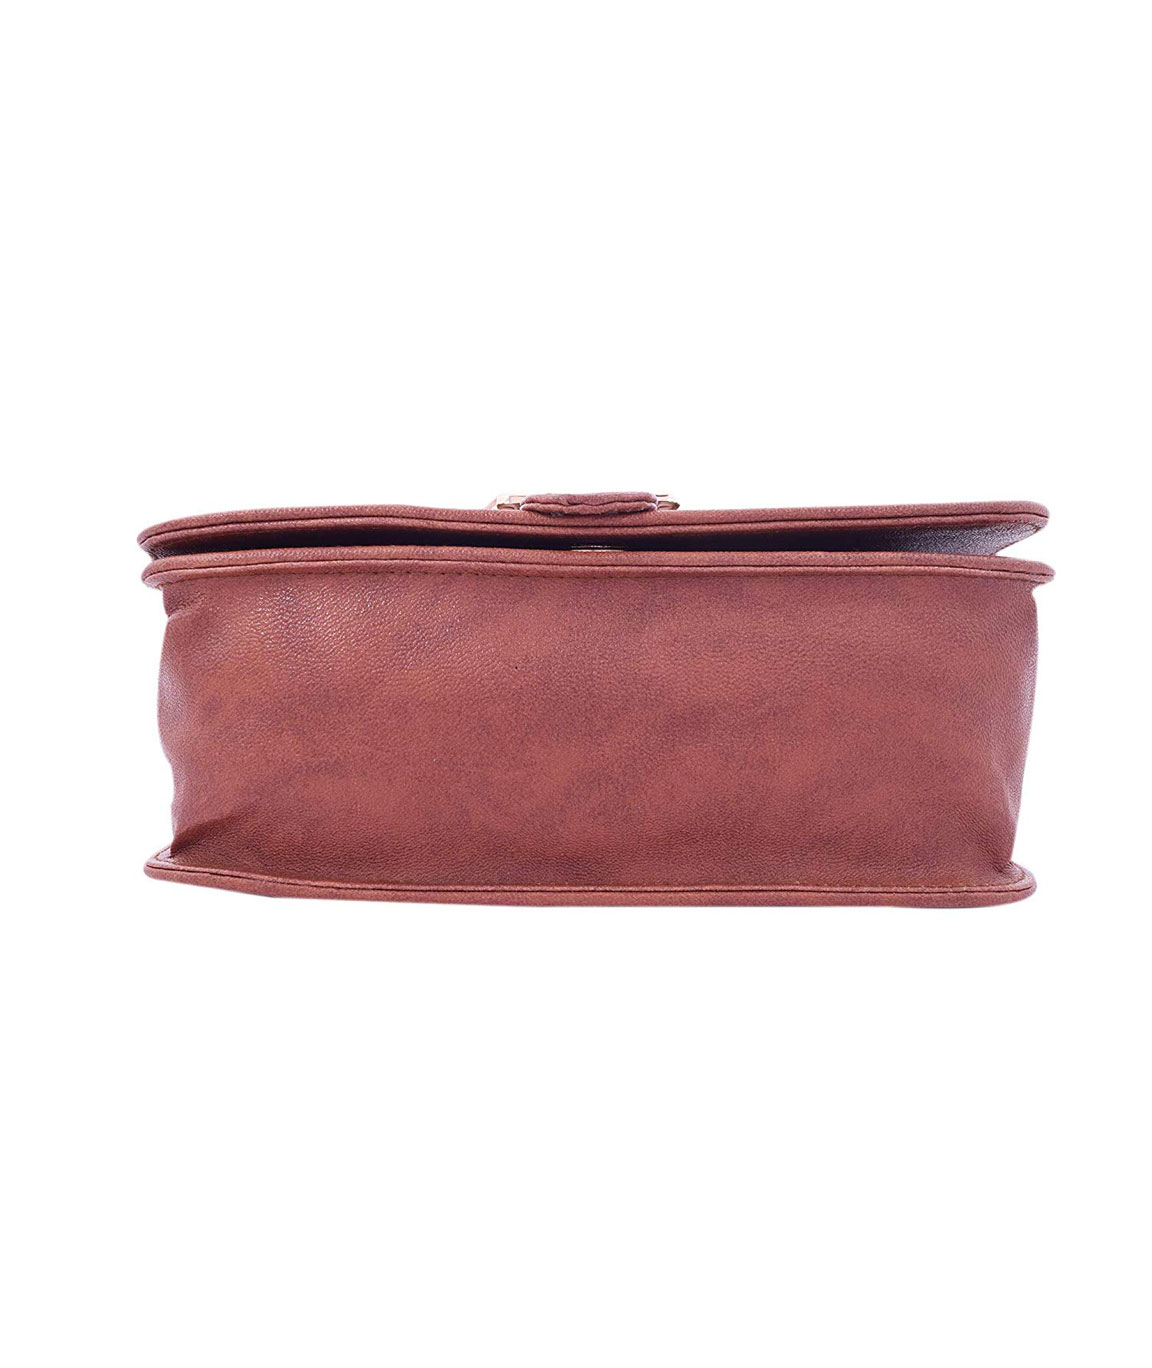 Etienne Aigner Burgundy Leather Purse Shoulder Bag Pocketbook Handbag | eBay